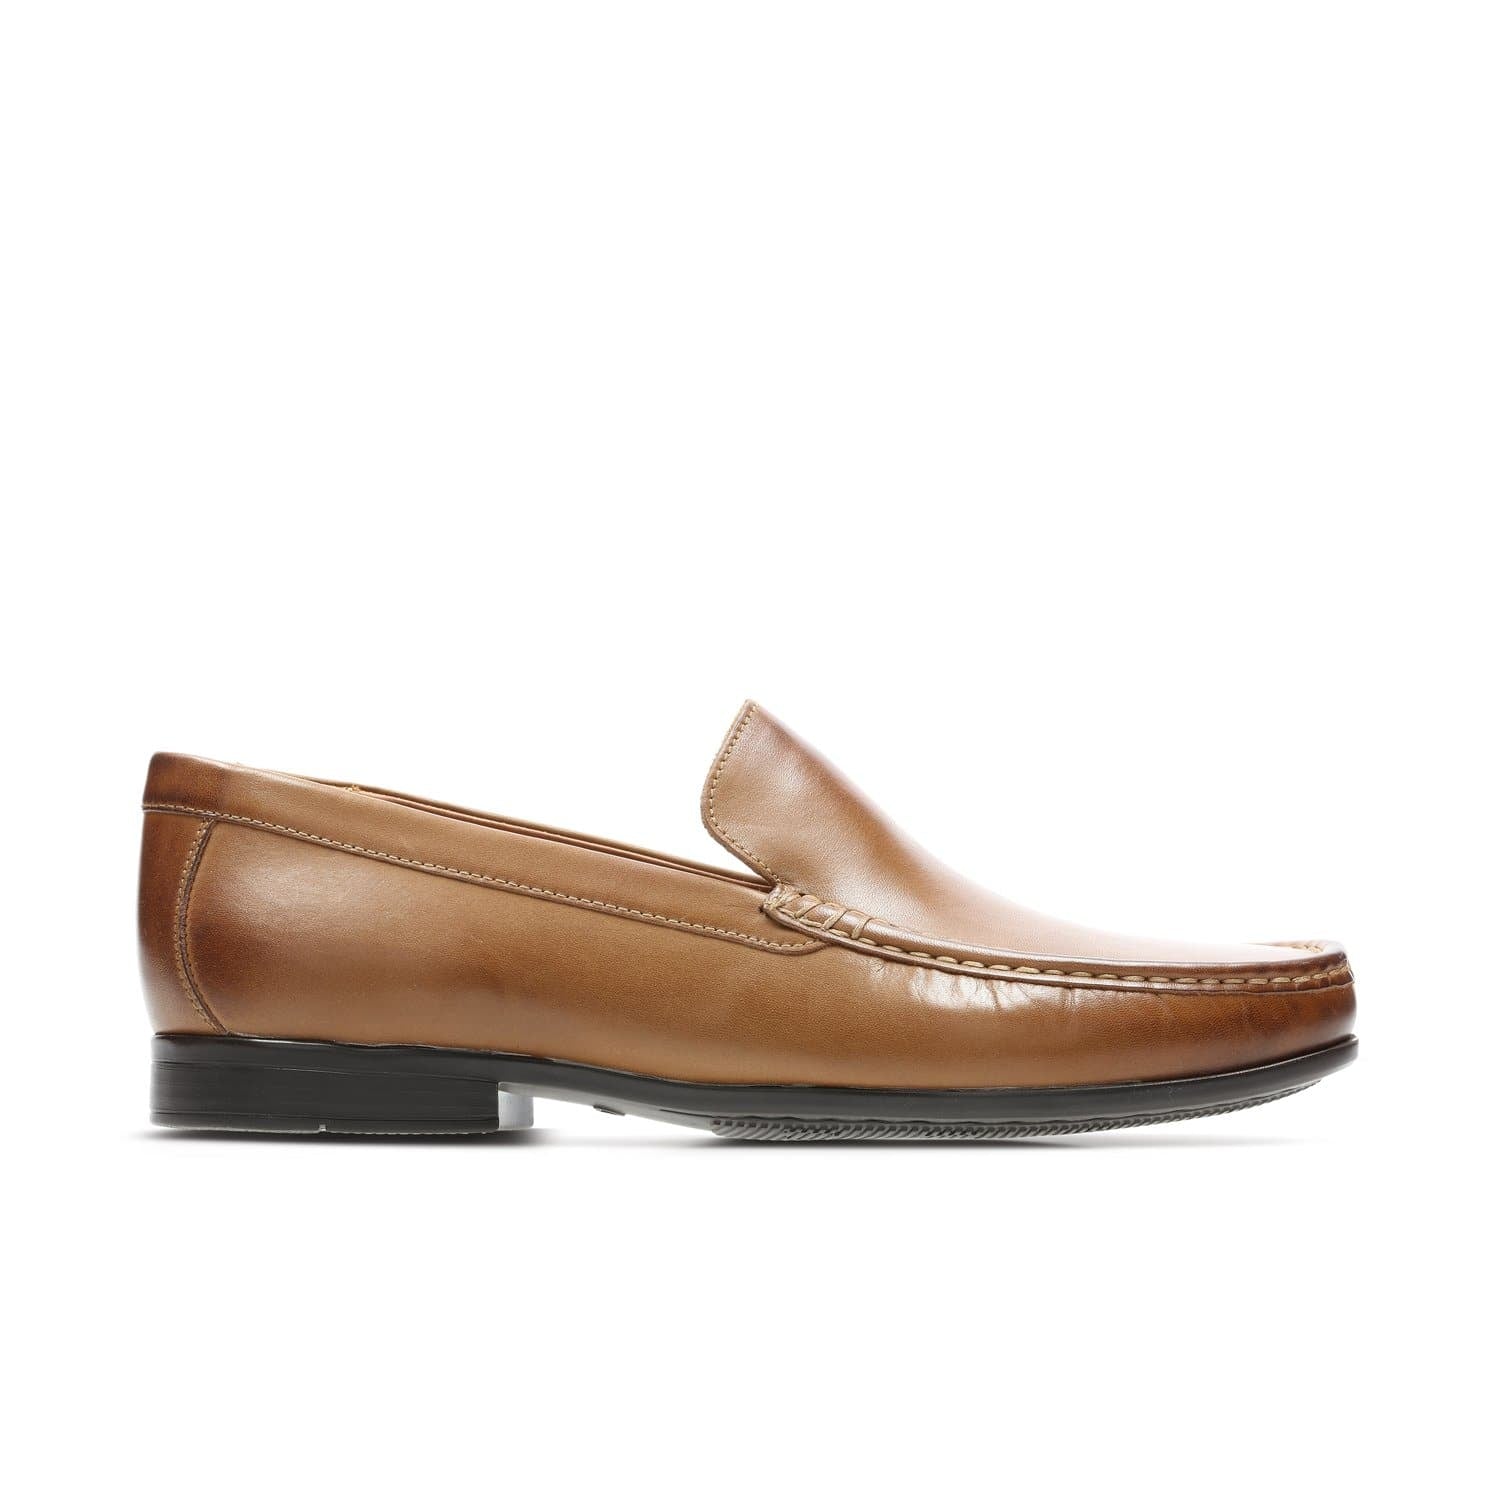 Clarks-Claude-Plain-Men's-Shoes-Tan-26138650